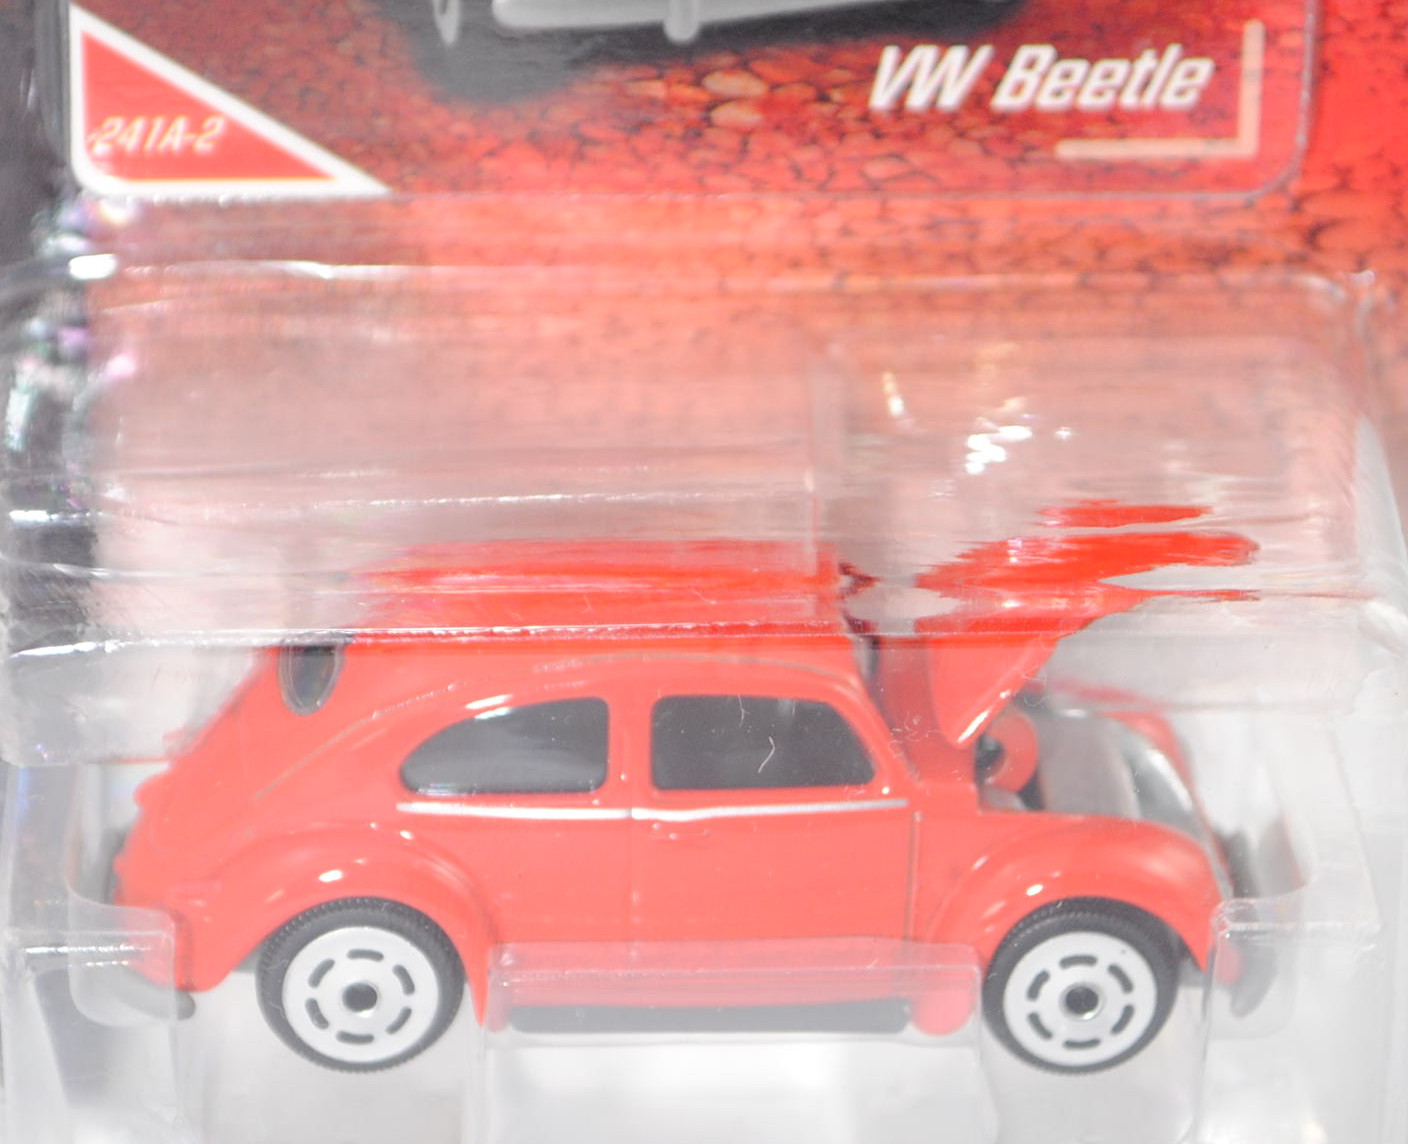 blutorange VINTAGE Käfer Standardlimousine Majorette 212052010 VW Beetle